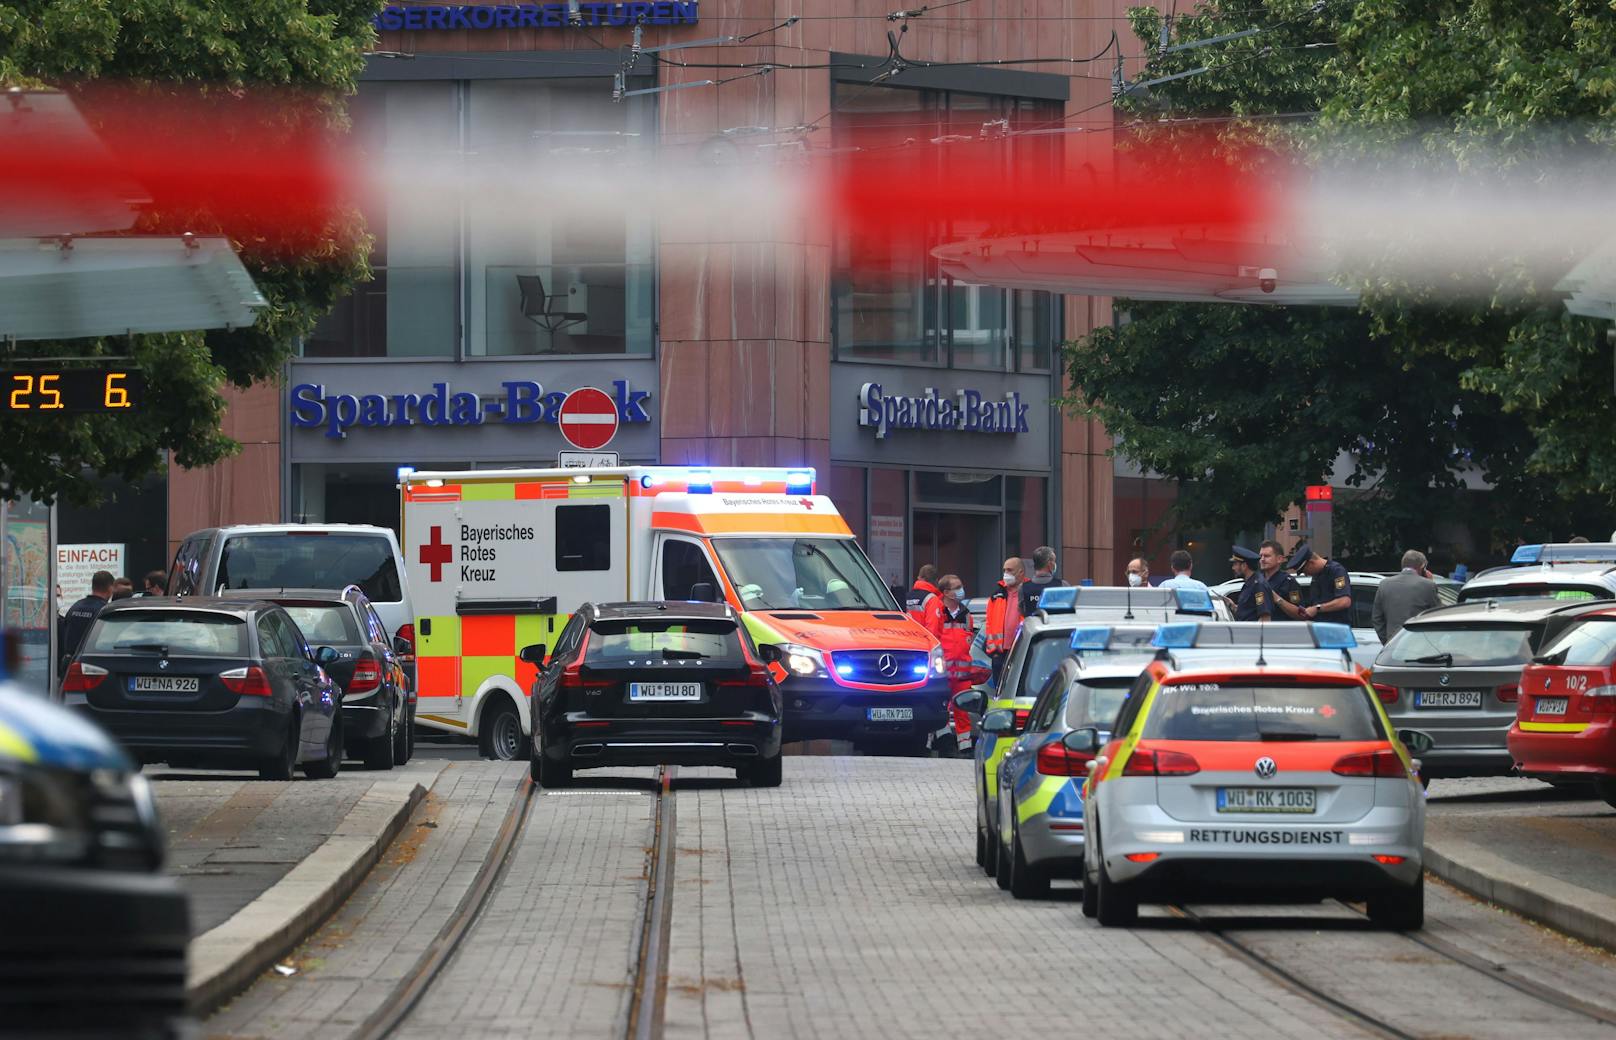 In der Würzburger Innenstadt ist es zu einem Gewaltverbrechen gekommen. Gemäß Medienberichten sind mindestens drei Personen tot.